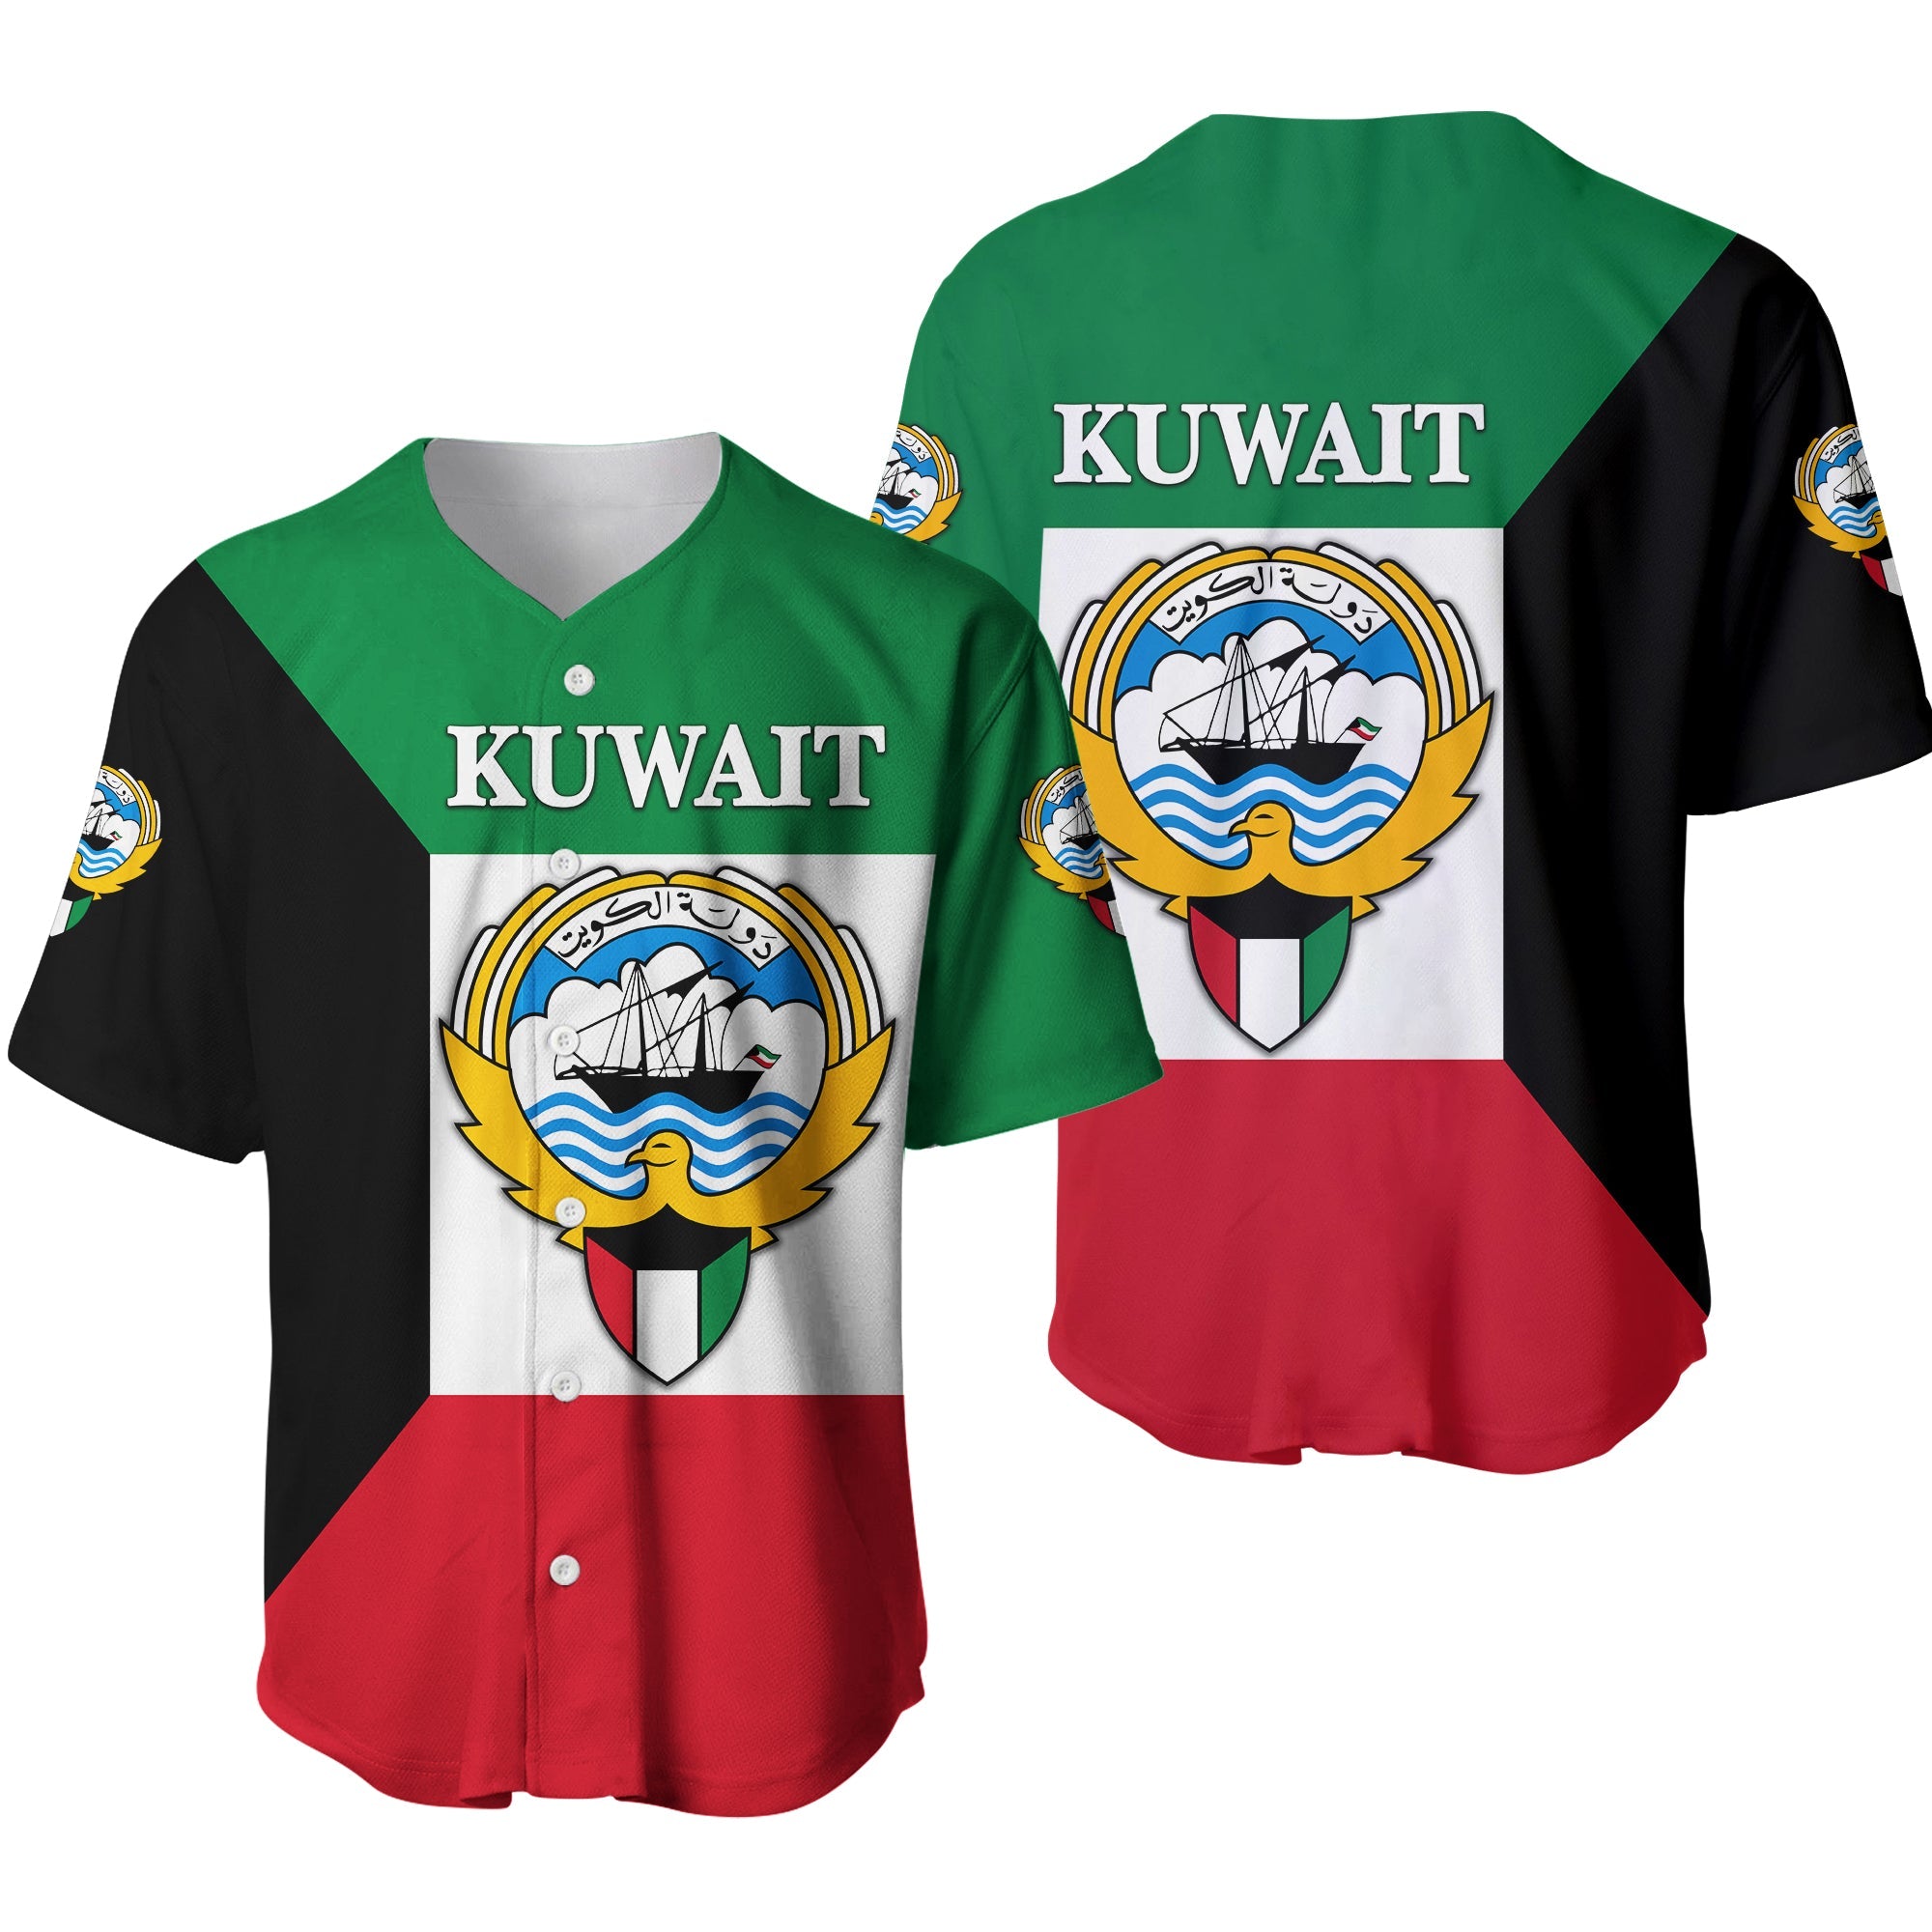 kuwait-baseball-jersey-flag-style